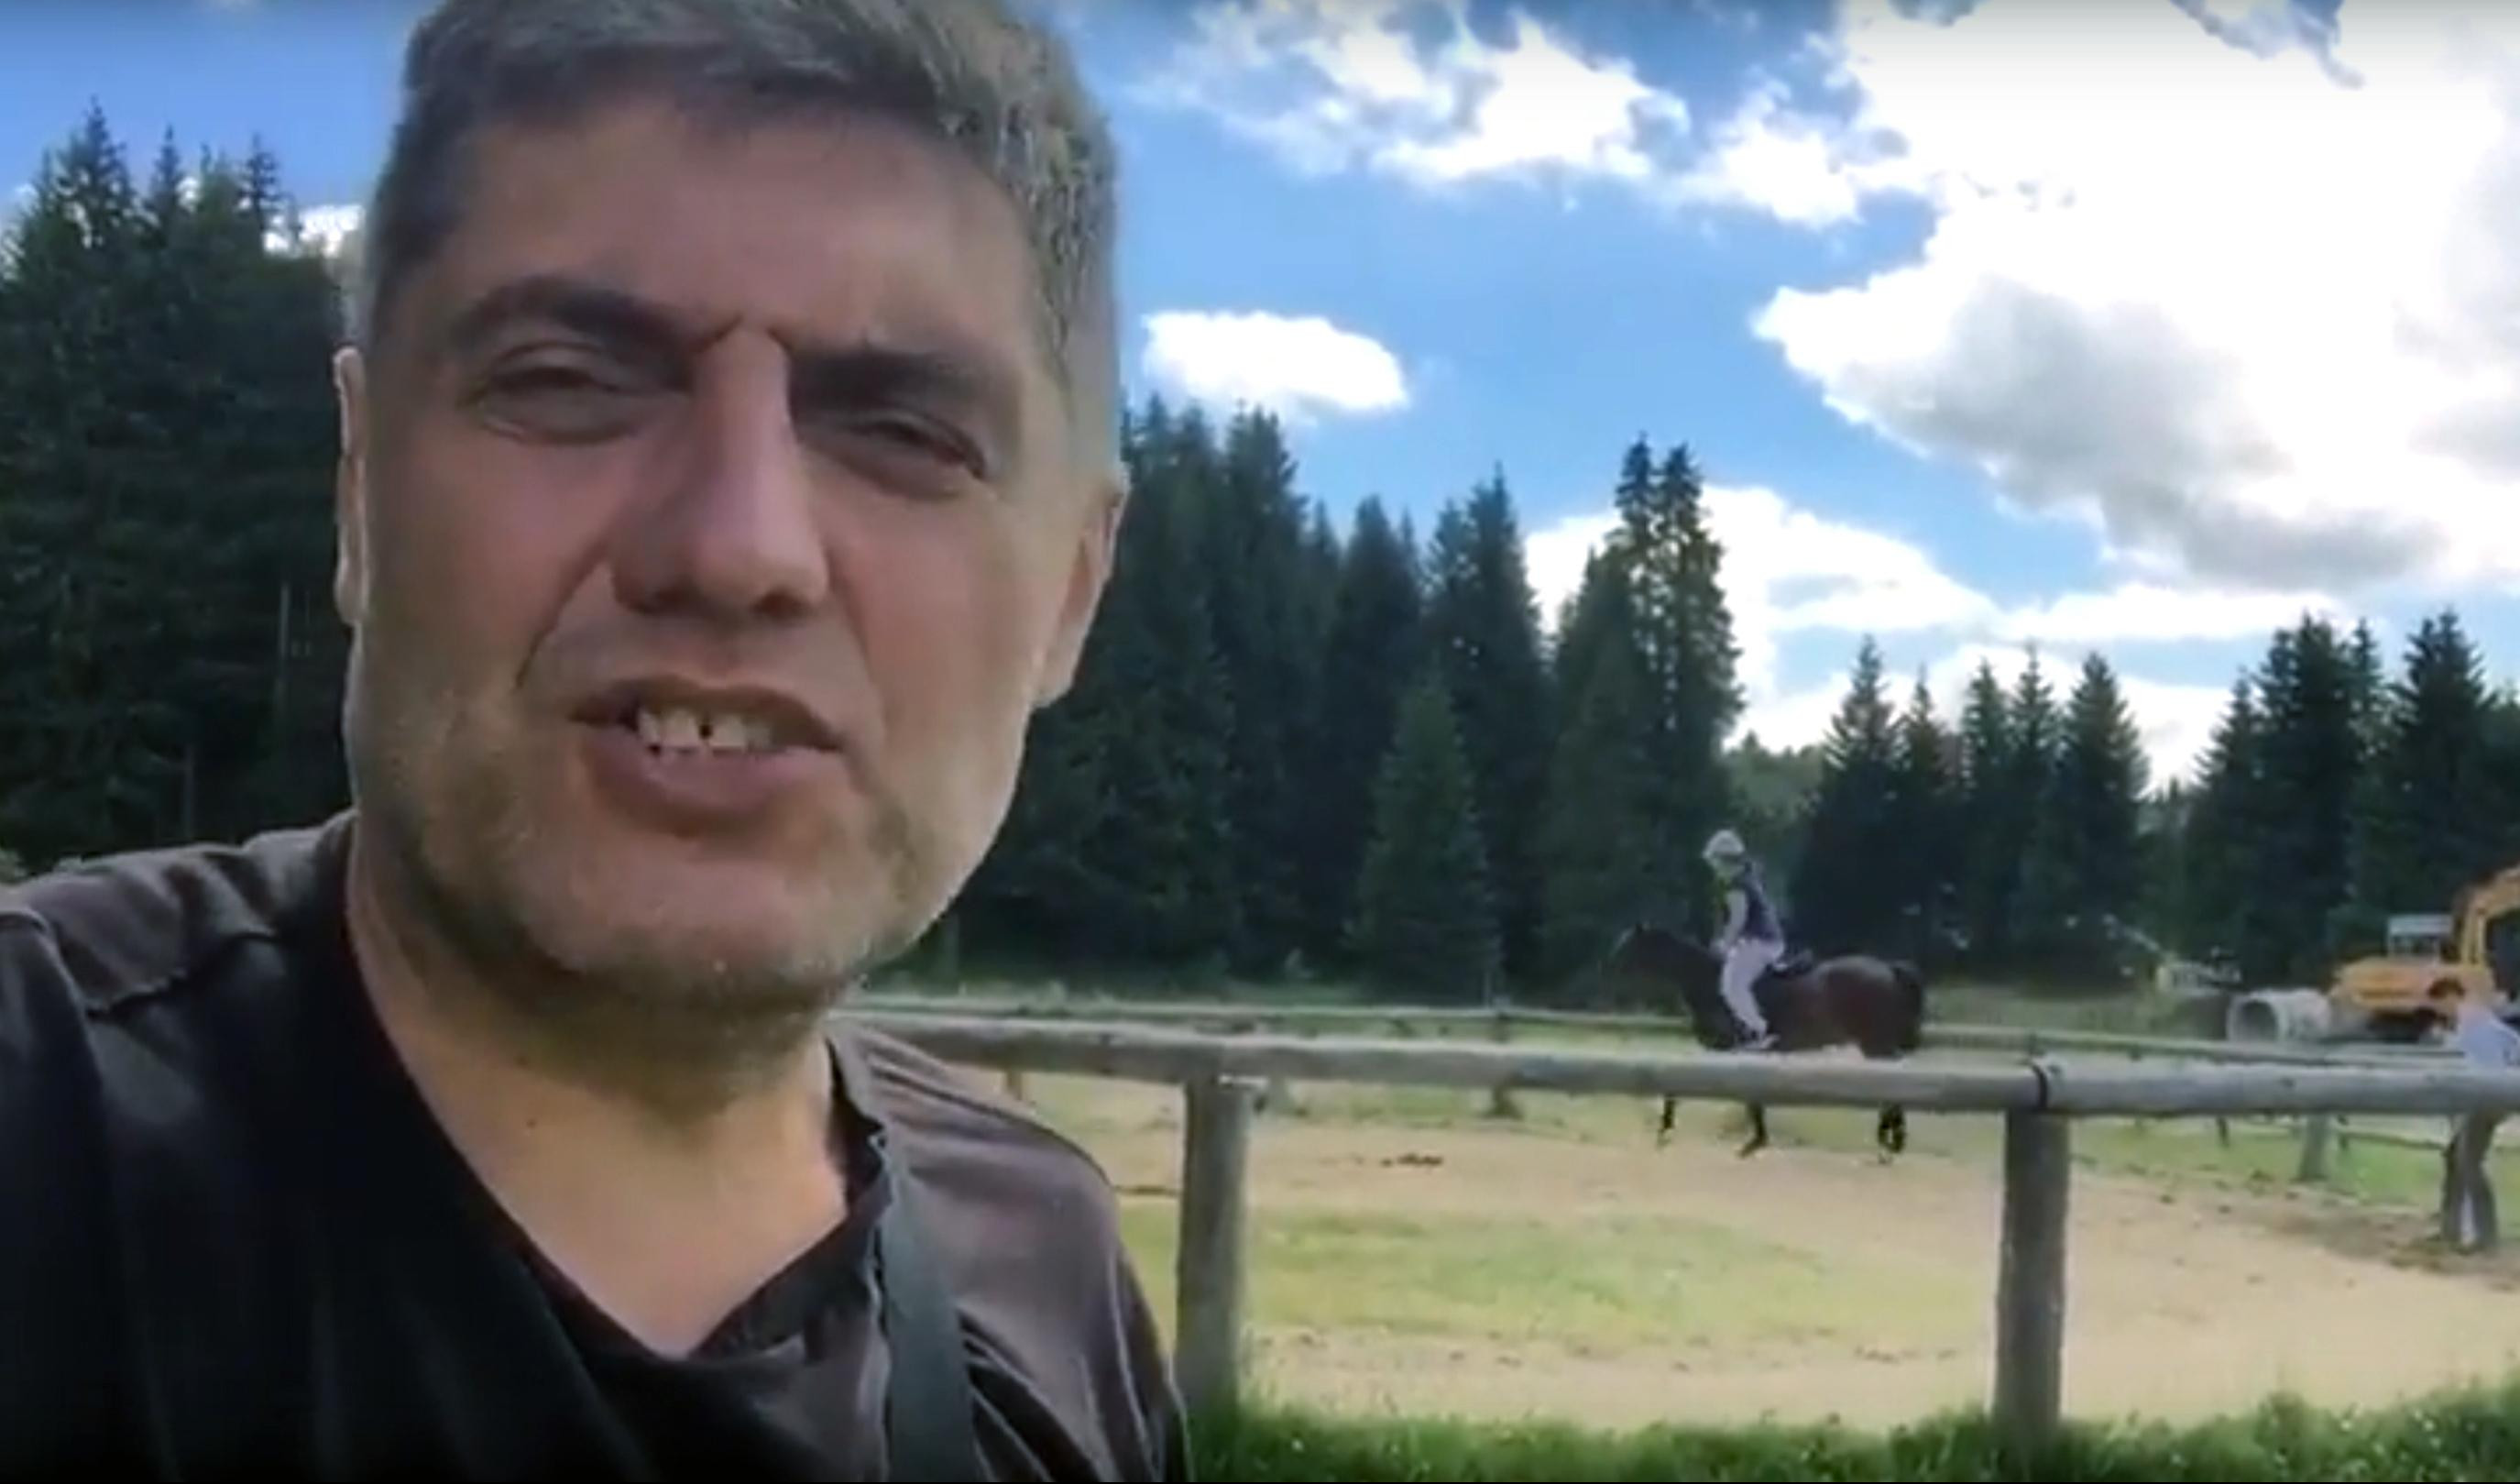 NA KONJA, BATO! Dr Miroljub Petrović preporučuje: JAHANJE JE ZAKON, kad uzjašete konja, KAO DA STE CARSKI SIN!